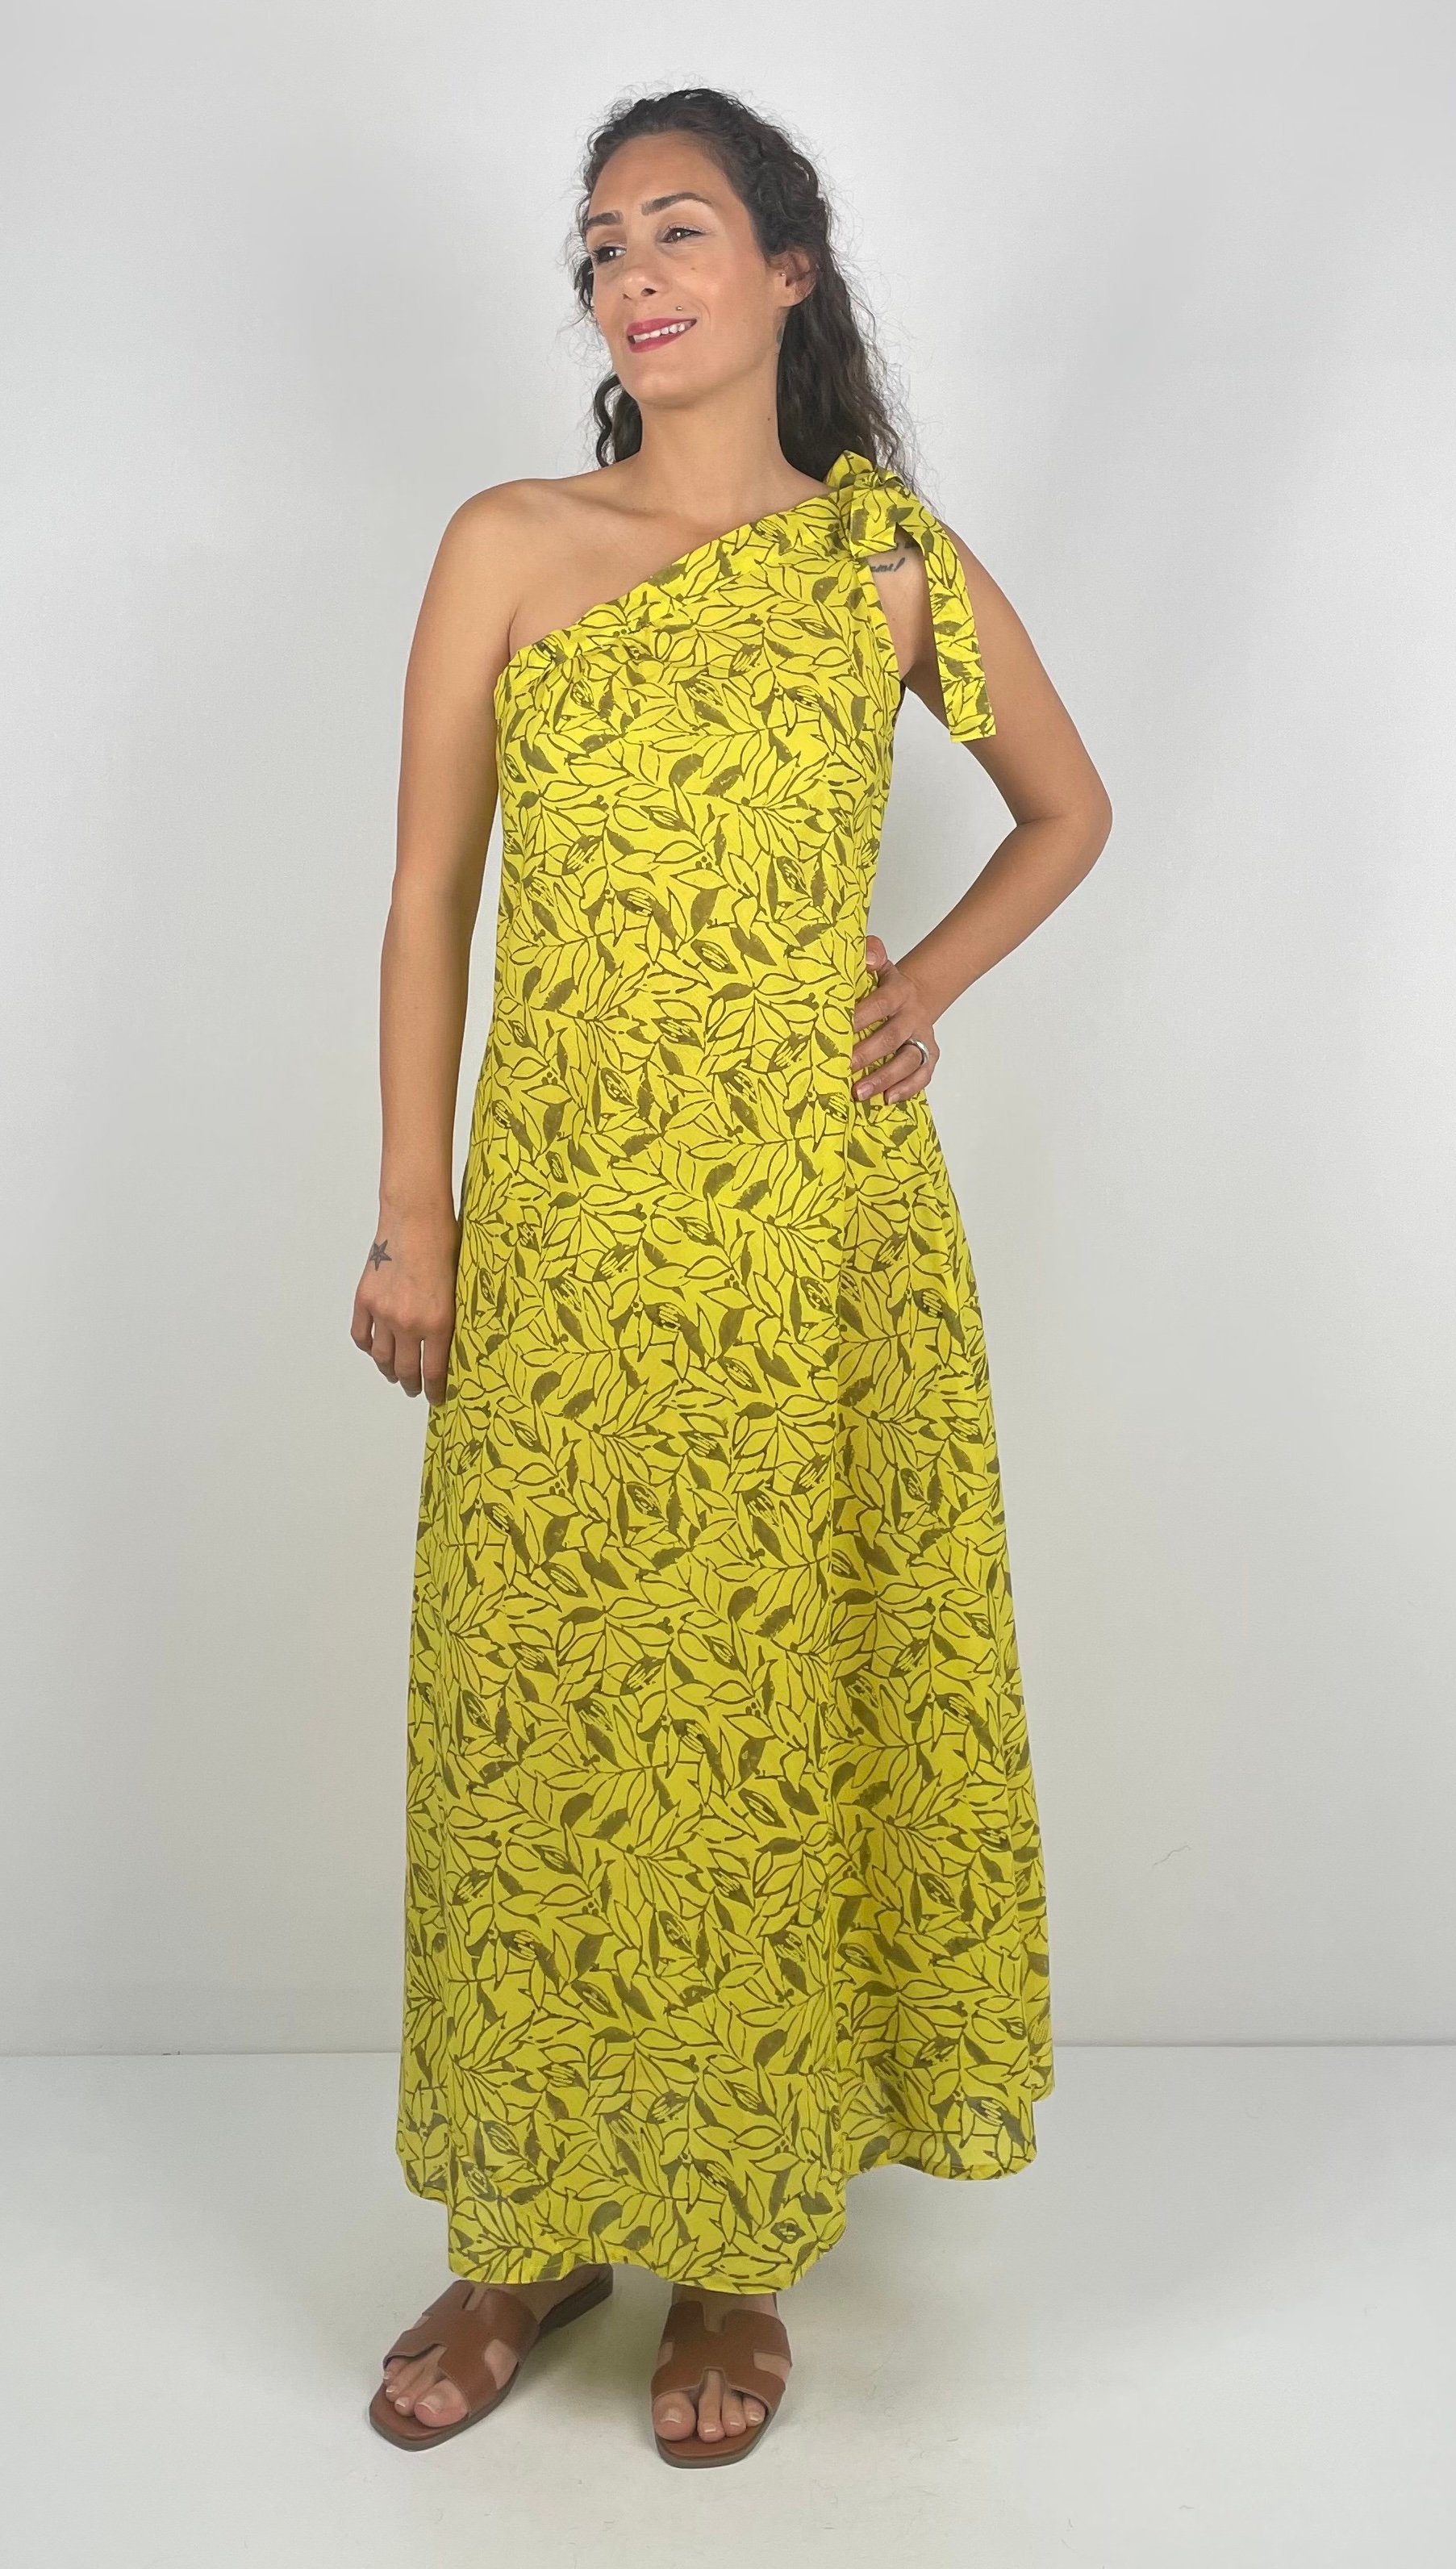 GESELLE Tek OmuzdanKurdela  Bağlamalı  Askılı  Desenli El Baskısı Müslin Uzun  Elbise ( Hand Block Print ) - Sarı Gri Yapraklar